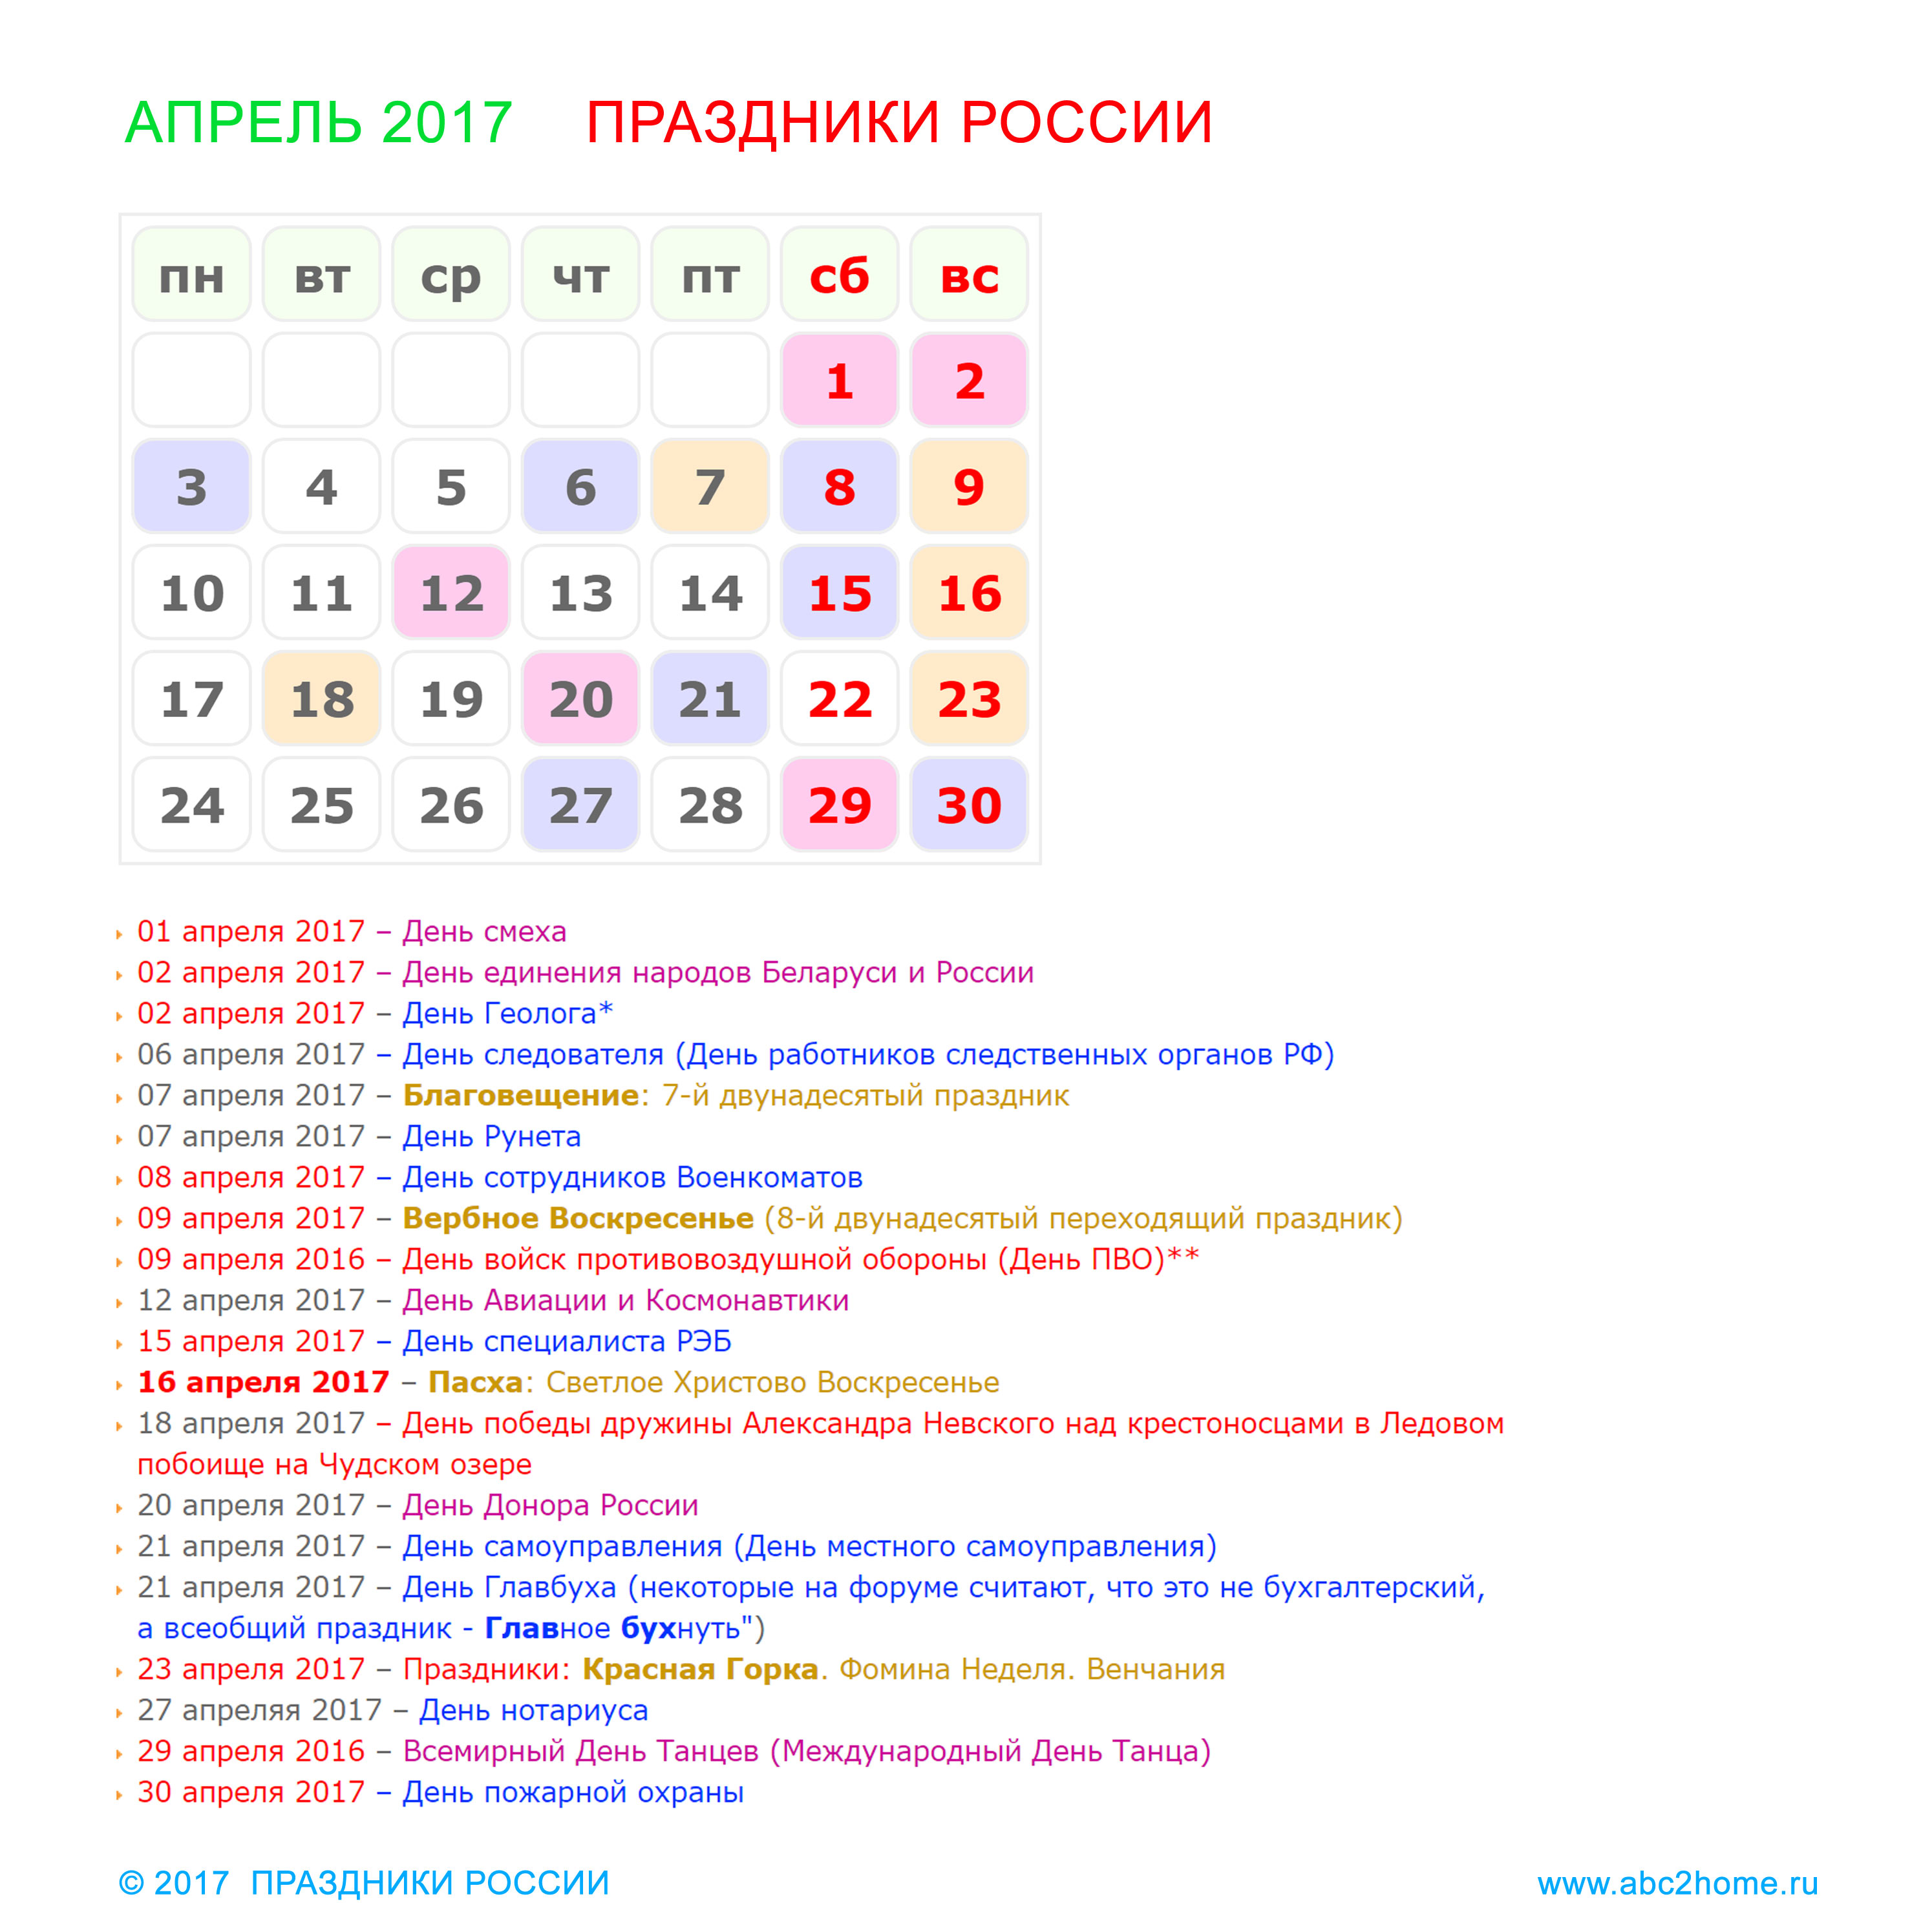 prazdniki_rossii_aprel_2017.jpg